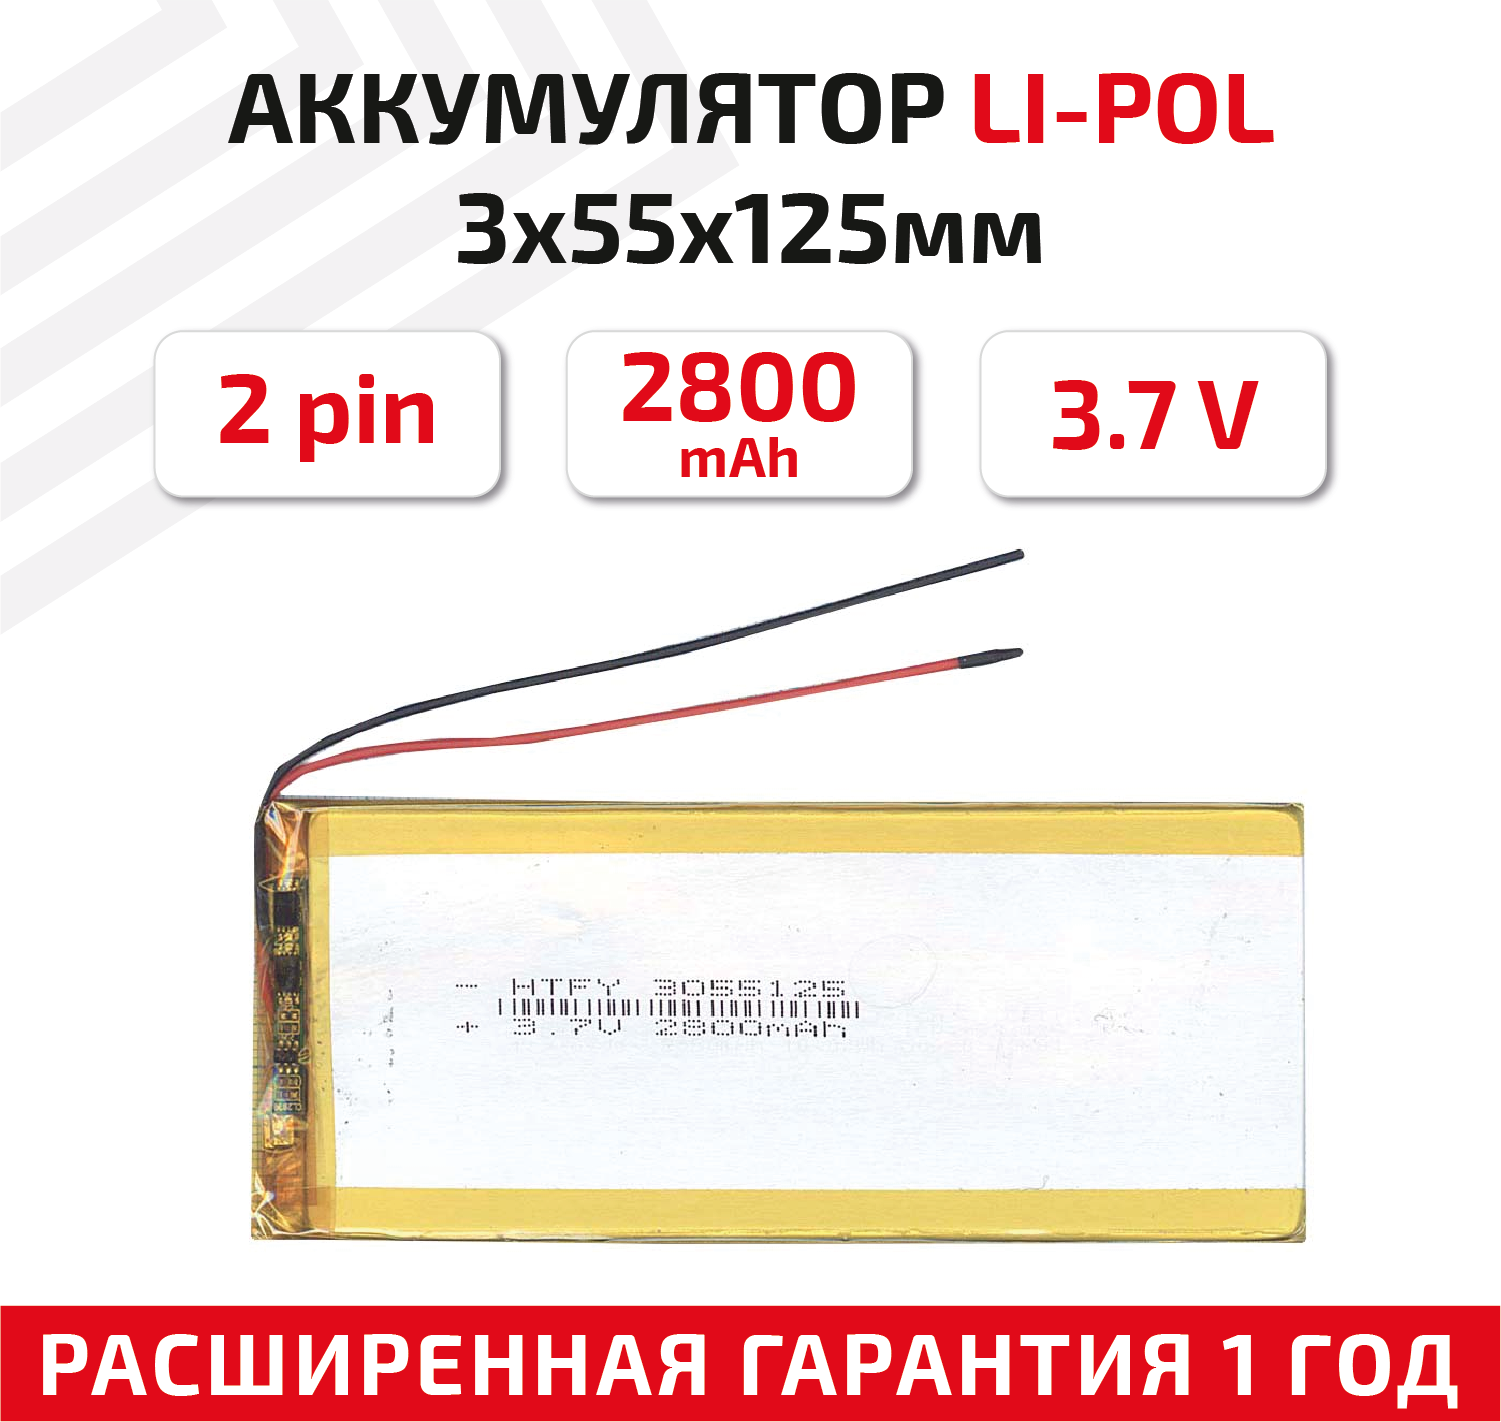 Универсальный аккумулятор (АКБ) для планшета видеорегистратора и др 3х55х125мм 2800мАч 3.7В Li-Pol 2pin (на 2 провода)